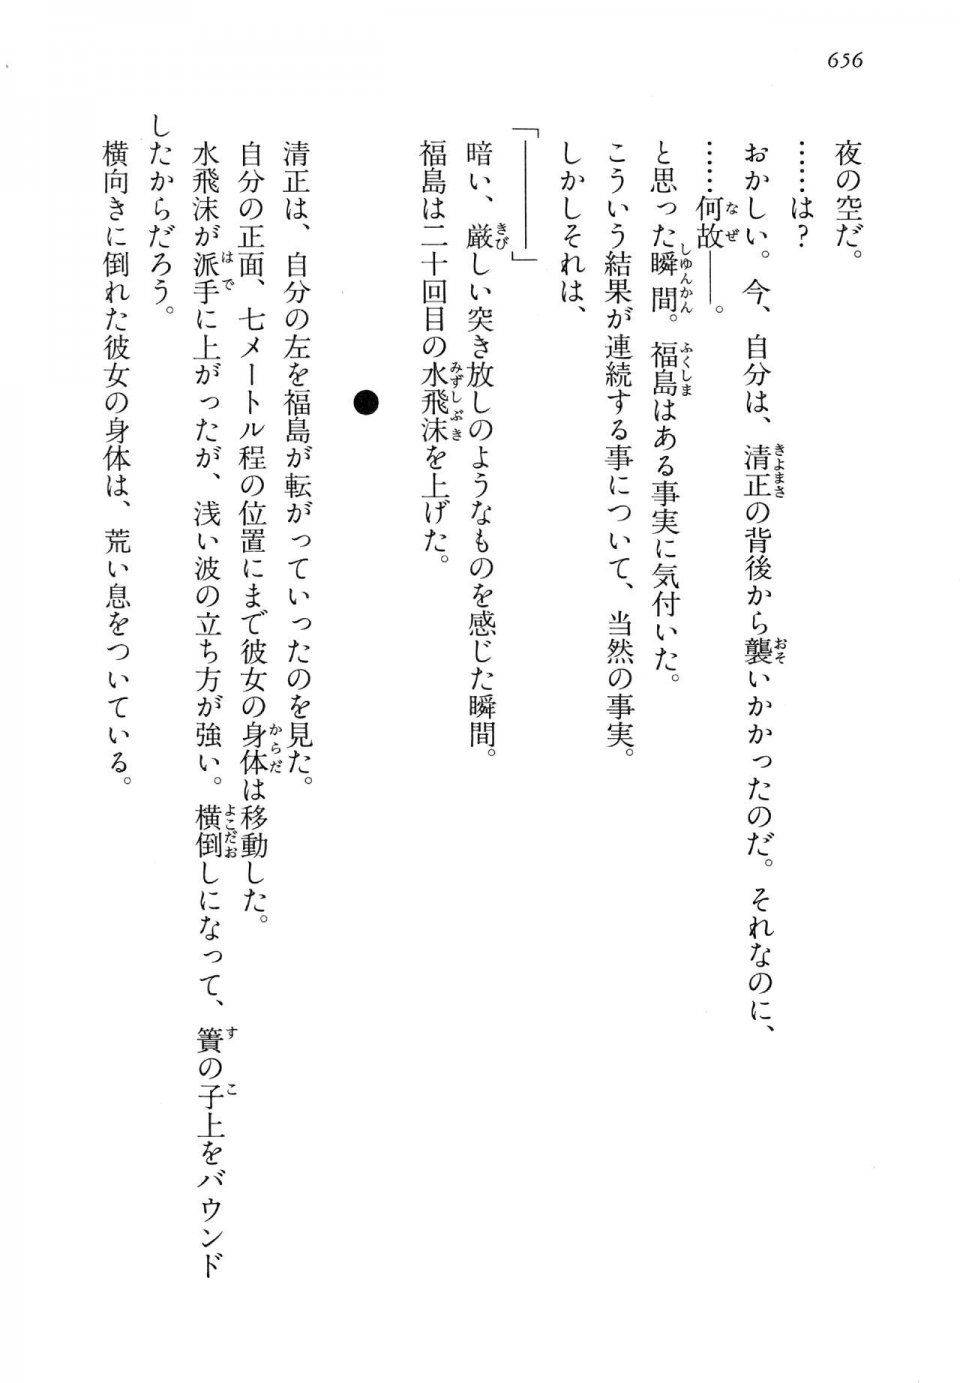 Kyoukai Senjou no Horizon LN Vol 14(6B) - Photo #656